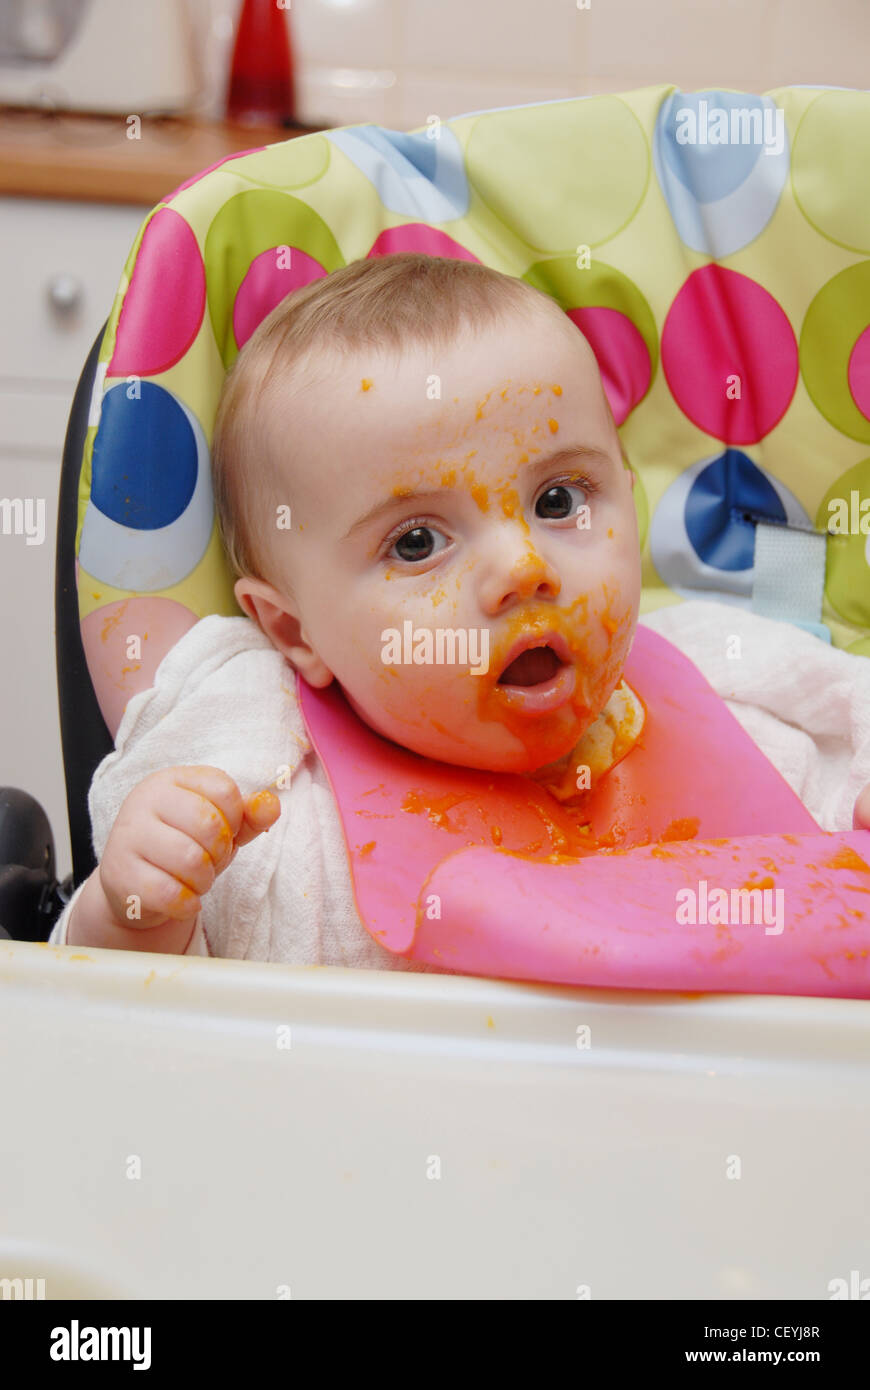 Ein weibliches Baby blondes Haar, im Hochstuhl sitzen, tragen eine quadratische Musselin und rosa Kunststoff-Lätzchen, püriert Essen Orange gefärbt Stockfoto